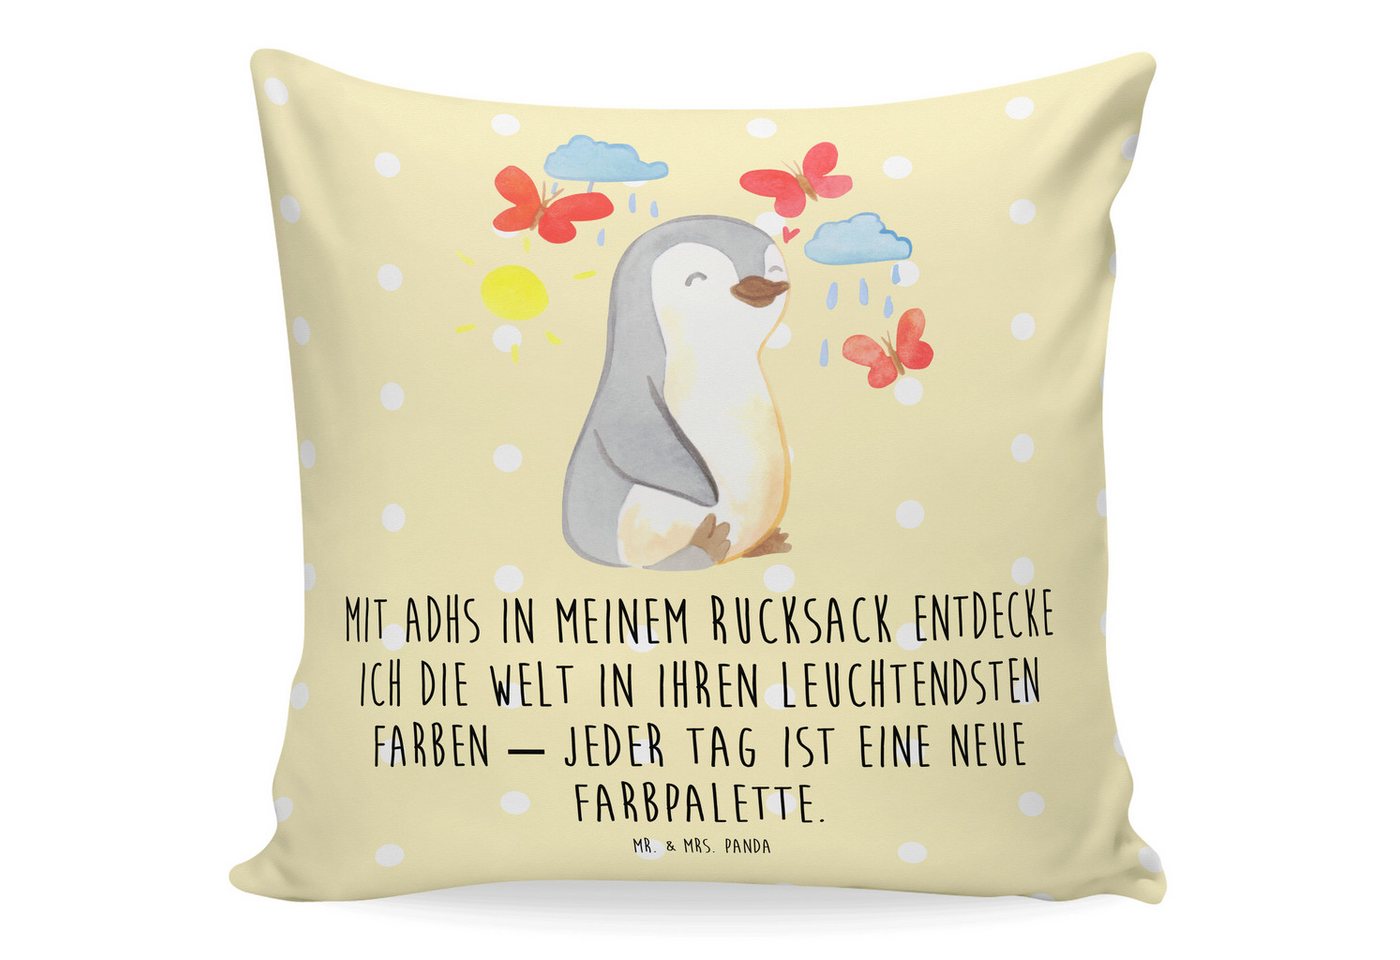 Mr. & Mrs. Panda Dekokissen Pinguin ADHS - Gelb Pastell - Geschenk, Kopfkissen, Kissenhülle, Verh, Weiche Mikrofaser von Mr. & Mrs. Panda